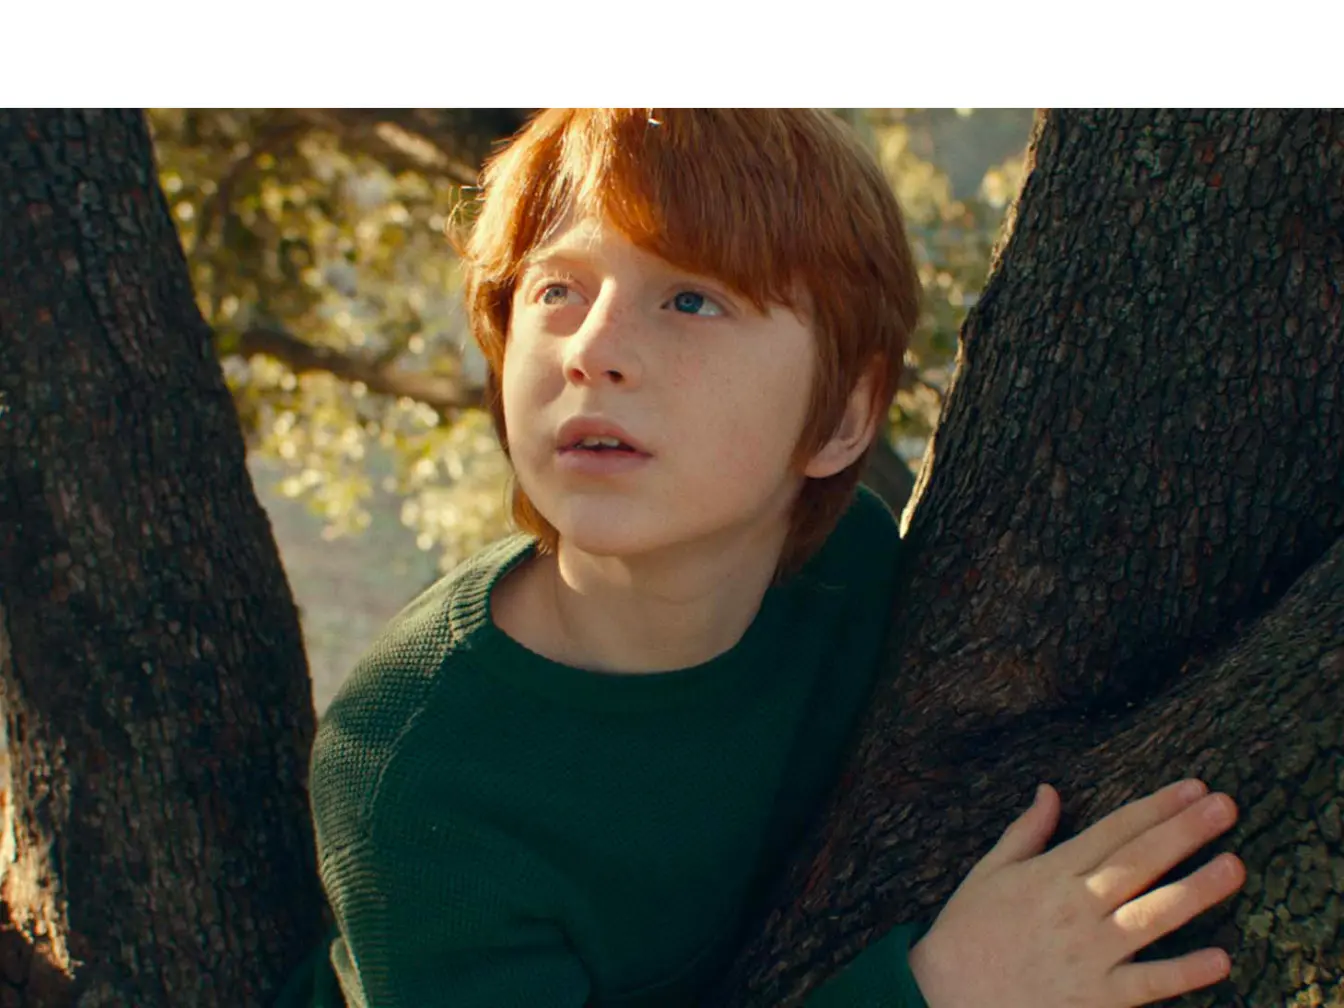 Enfant dans un arbre